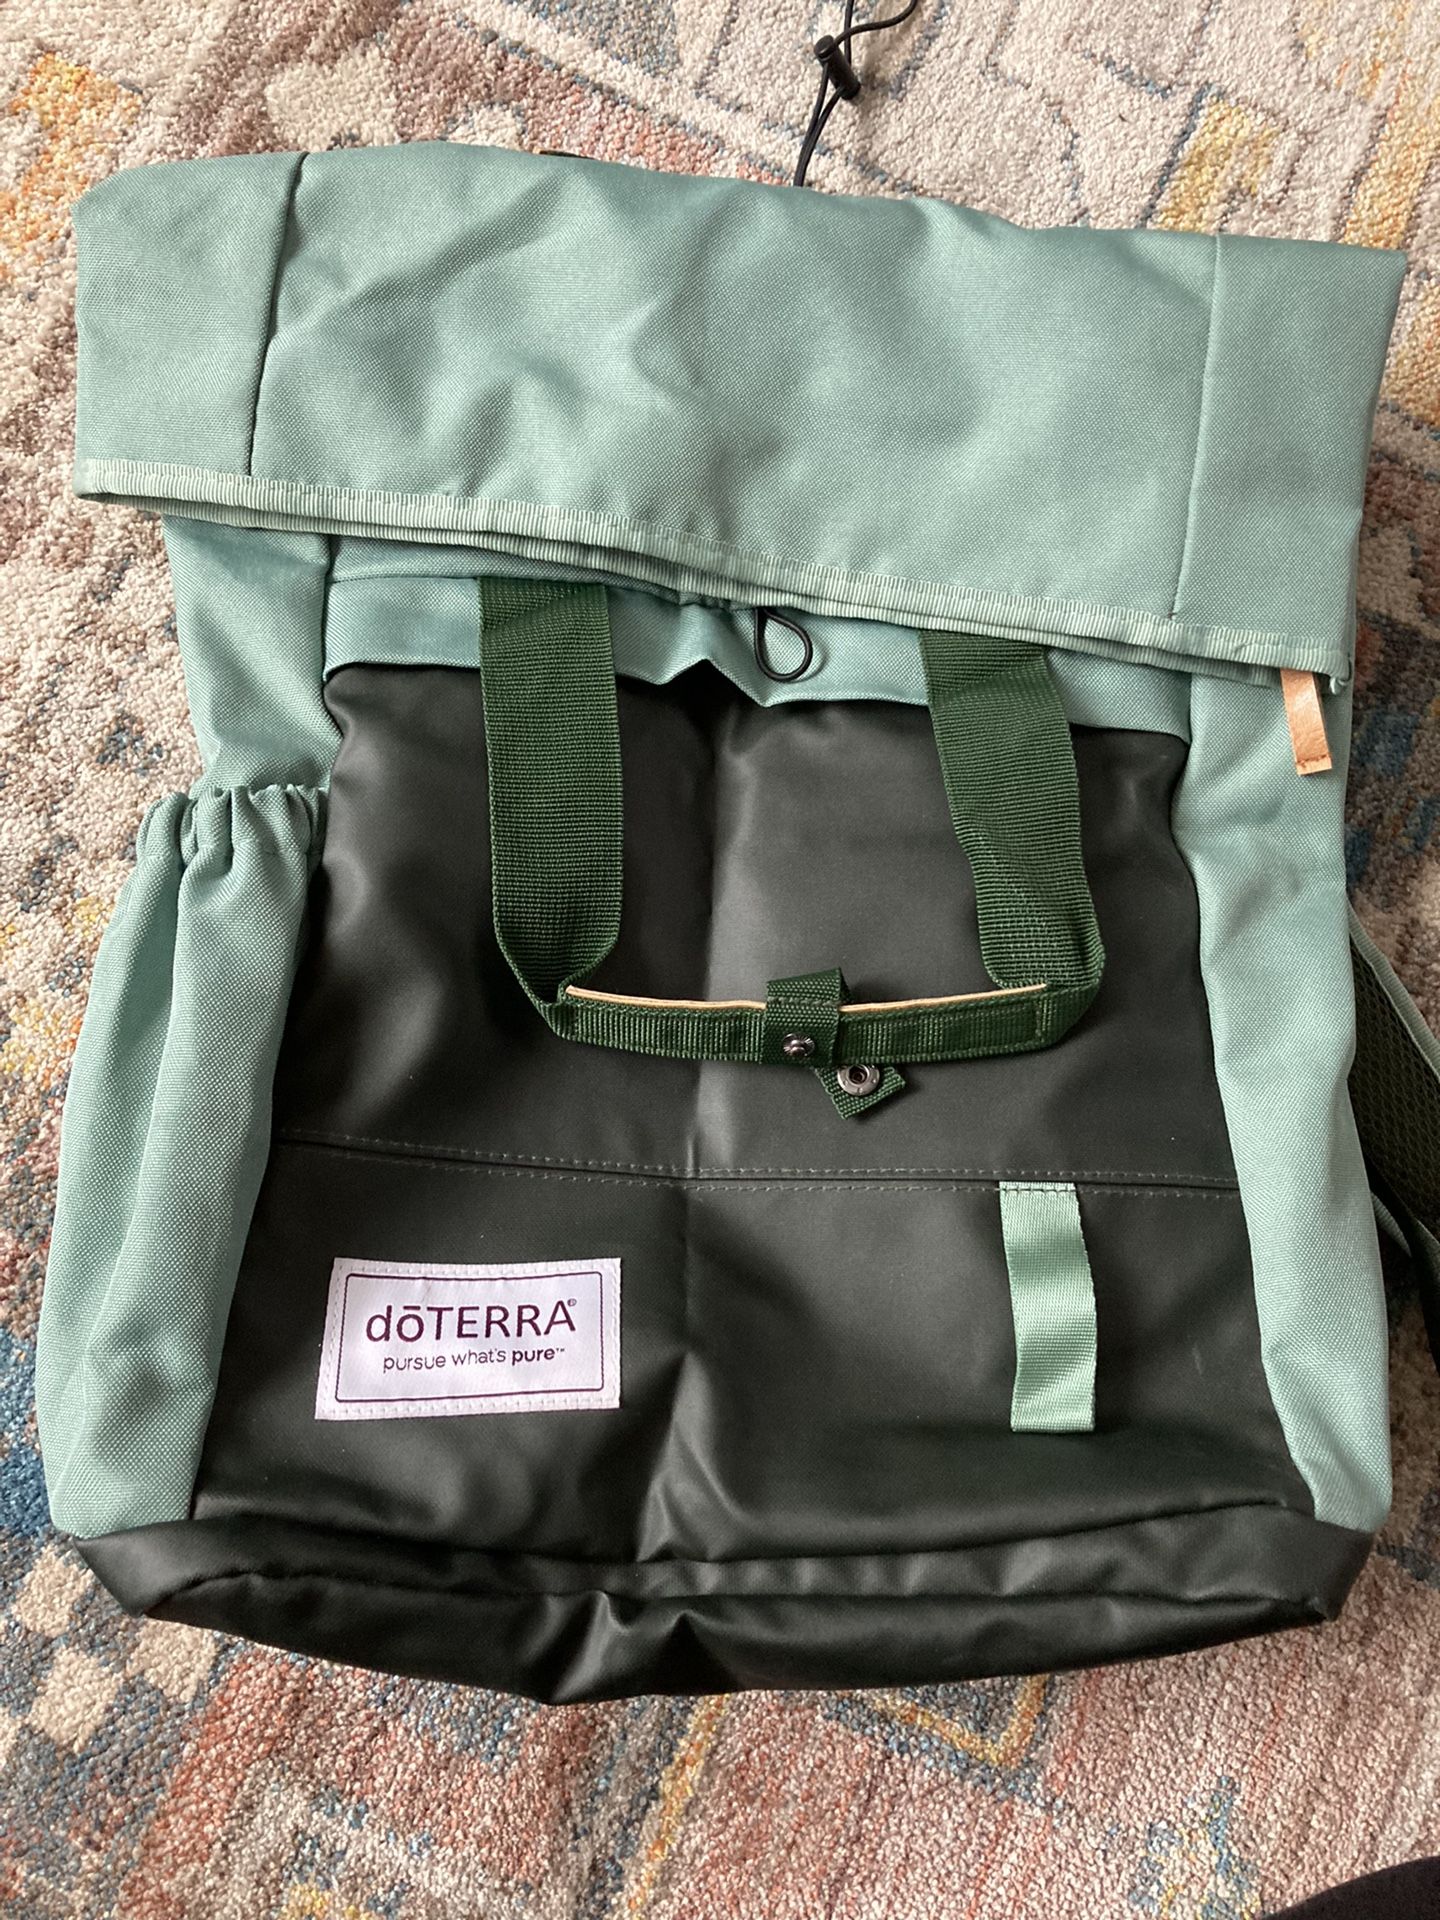 DoTerra Backpack/ Cooler Bag/Diaper bag